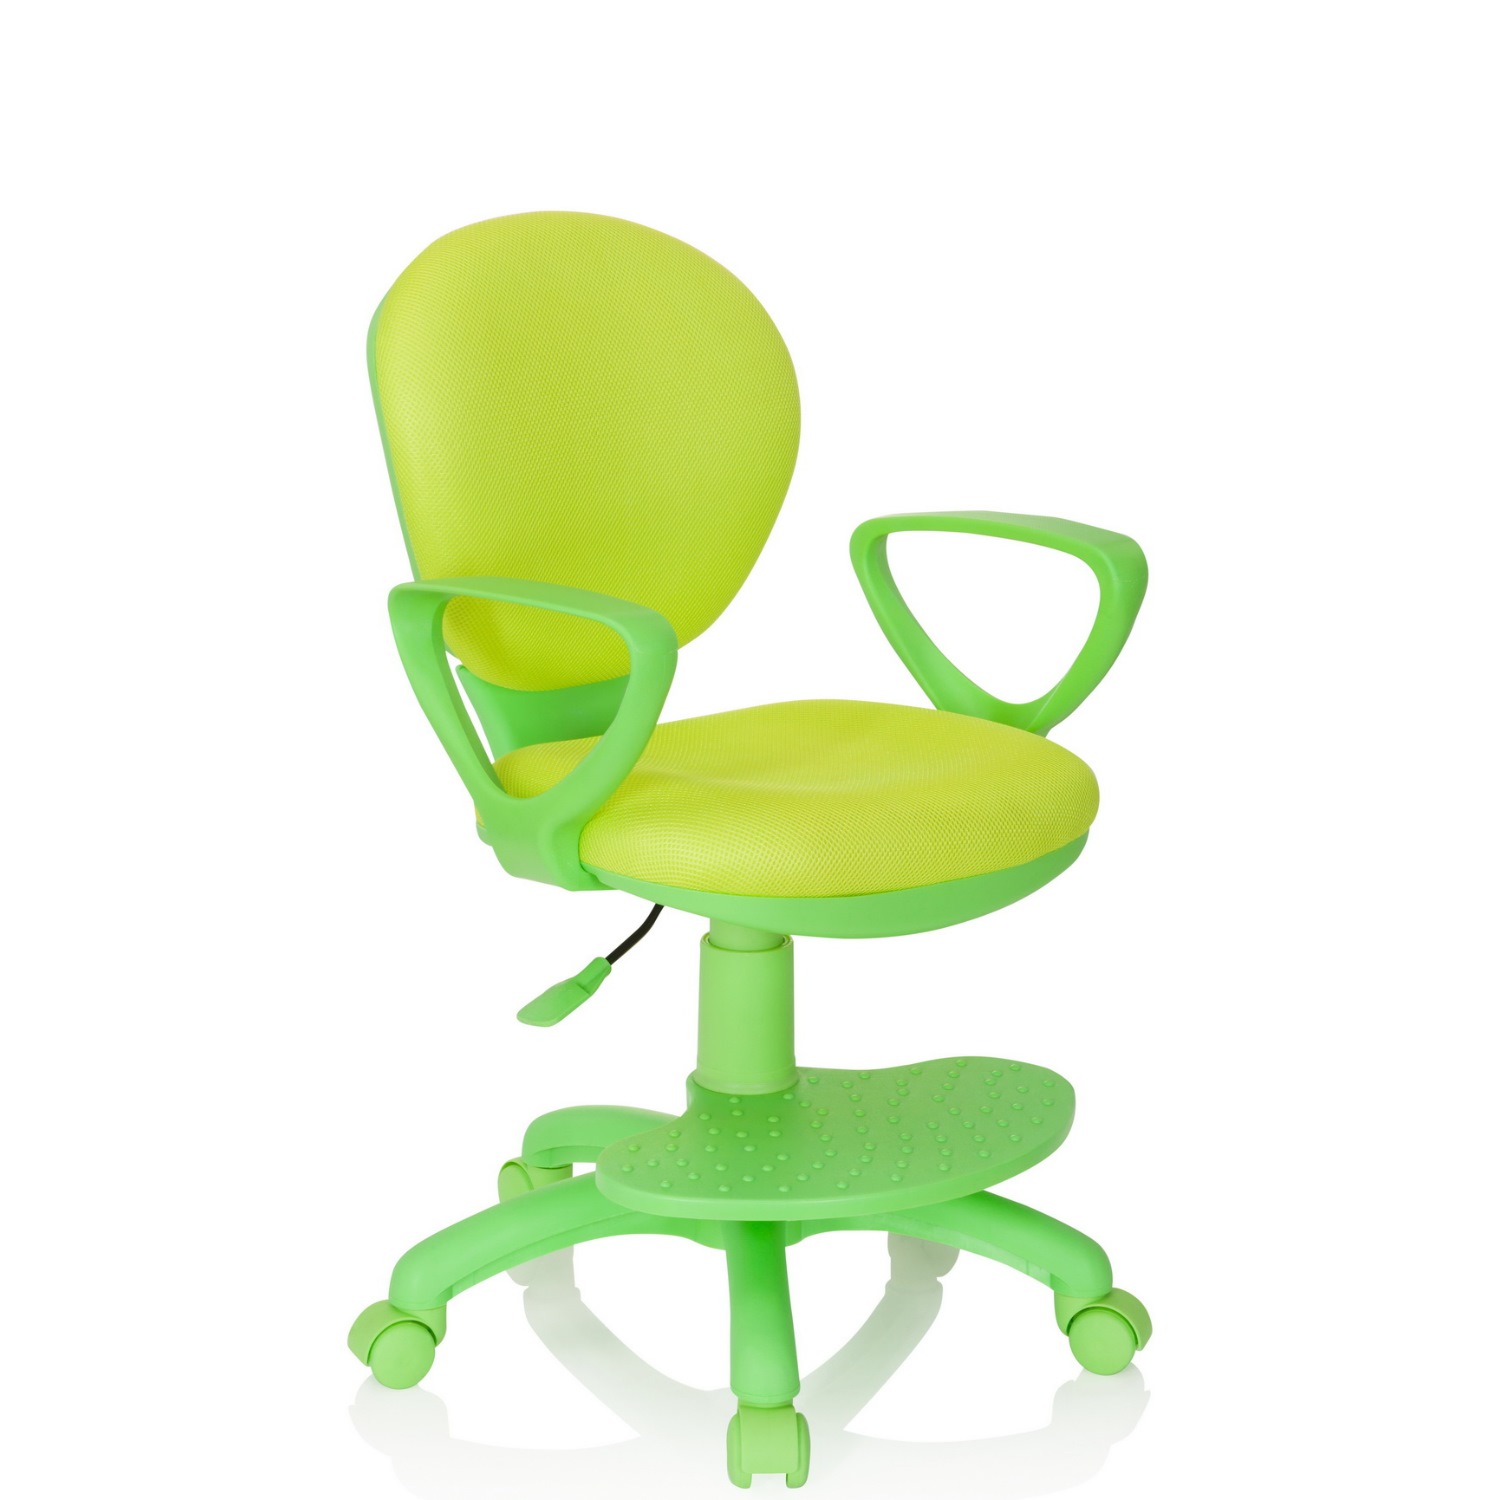 Büromöbel preiswert und schnell - Büroland Kinderstuhl / Schreibtischstuhl  PARADIGM Stoff grün